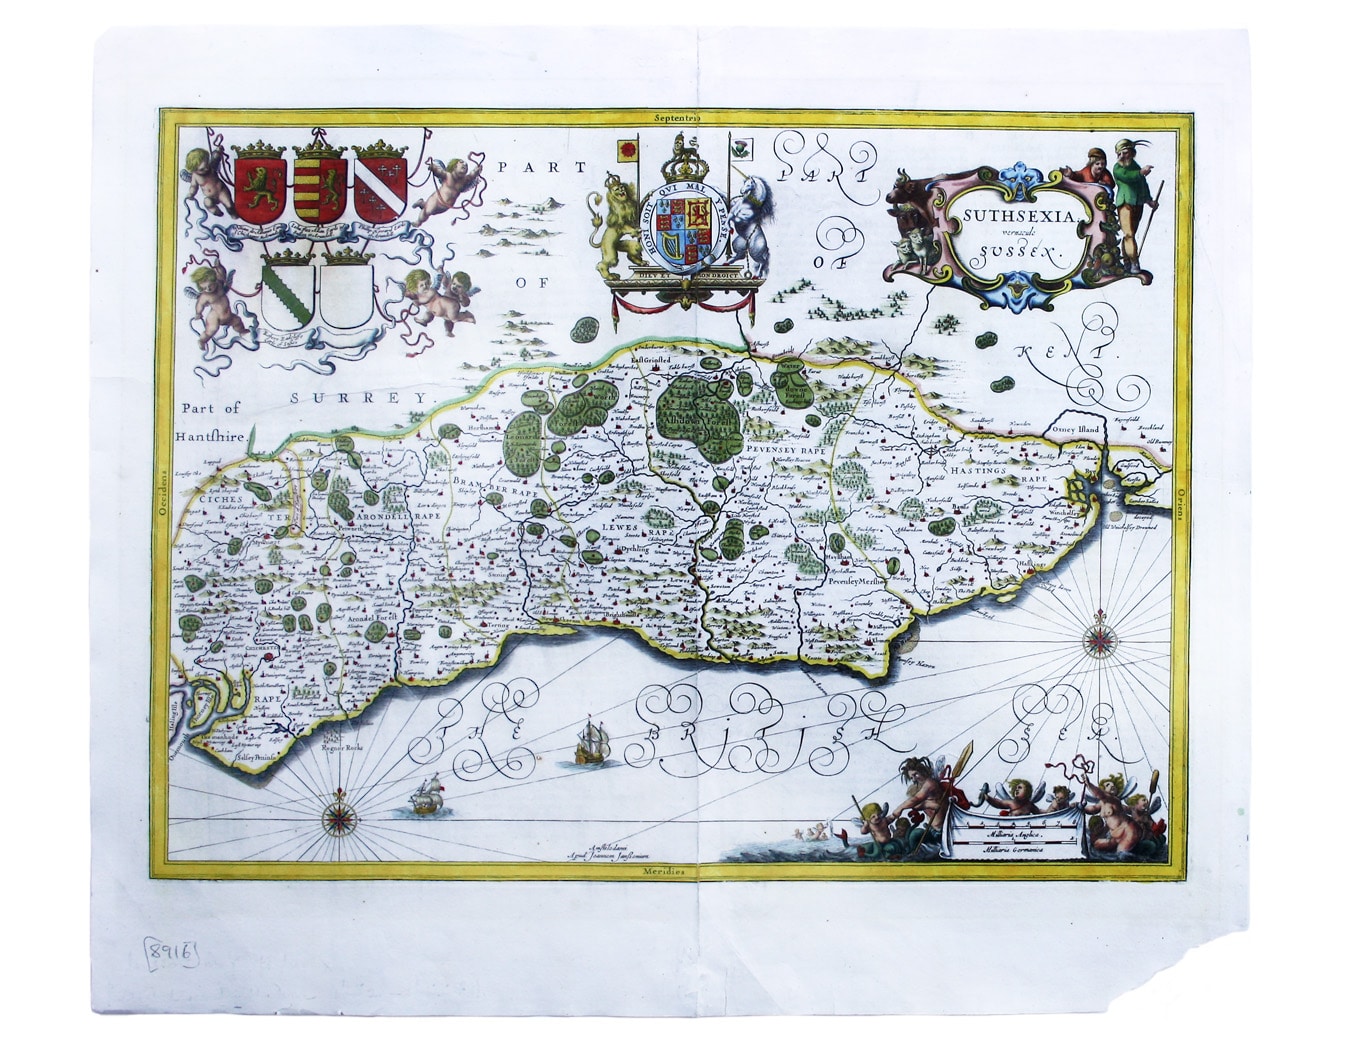 Janssonius’ Map of Sussex